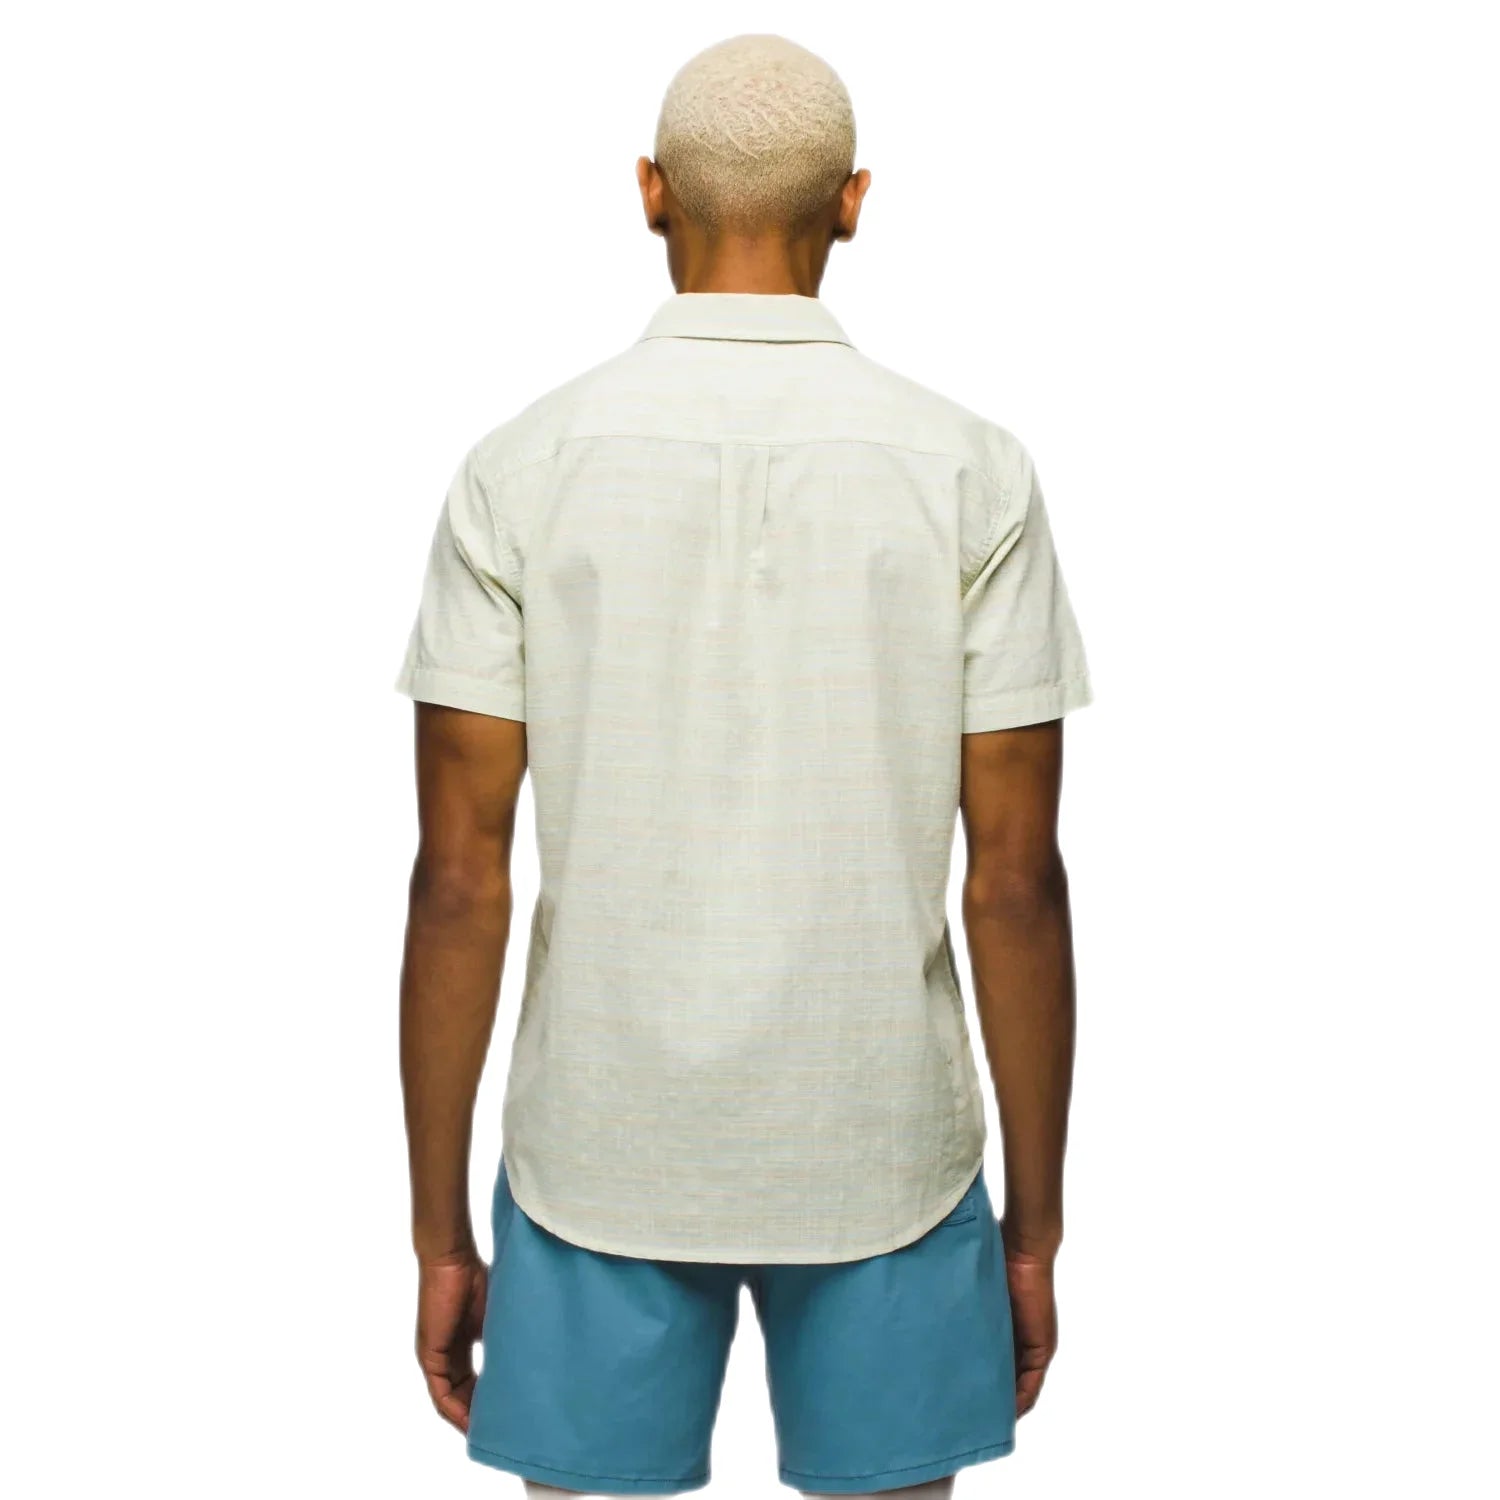 Prana Men's Groveland Shirt Pale Aloe Model Back